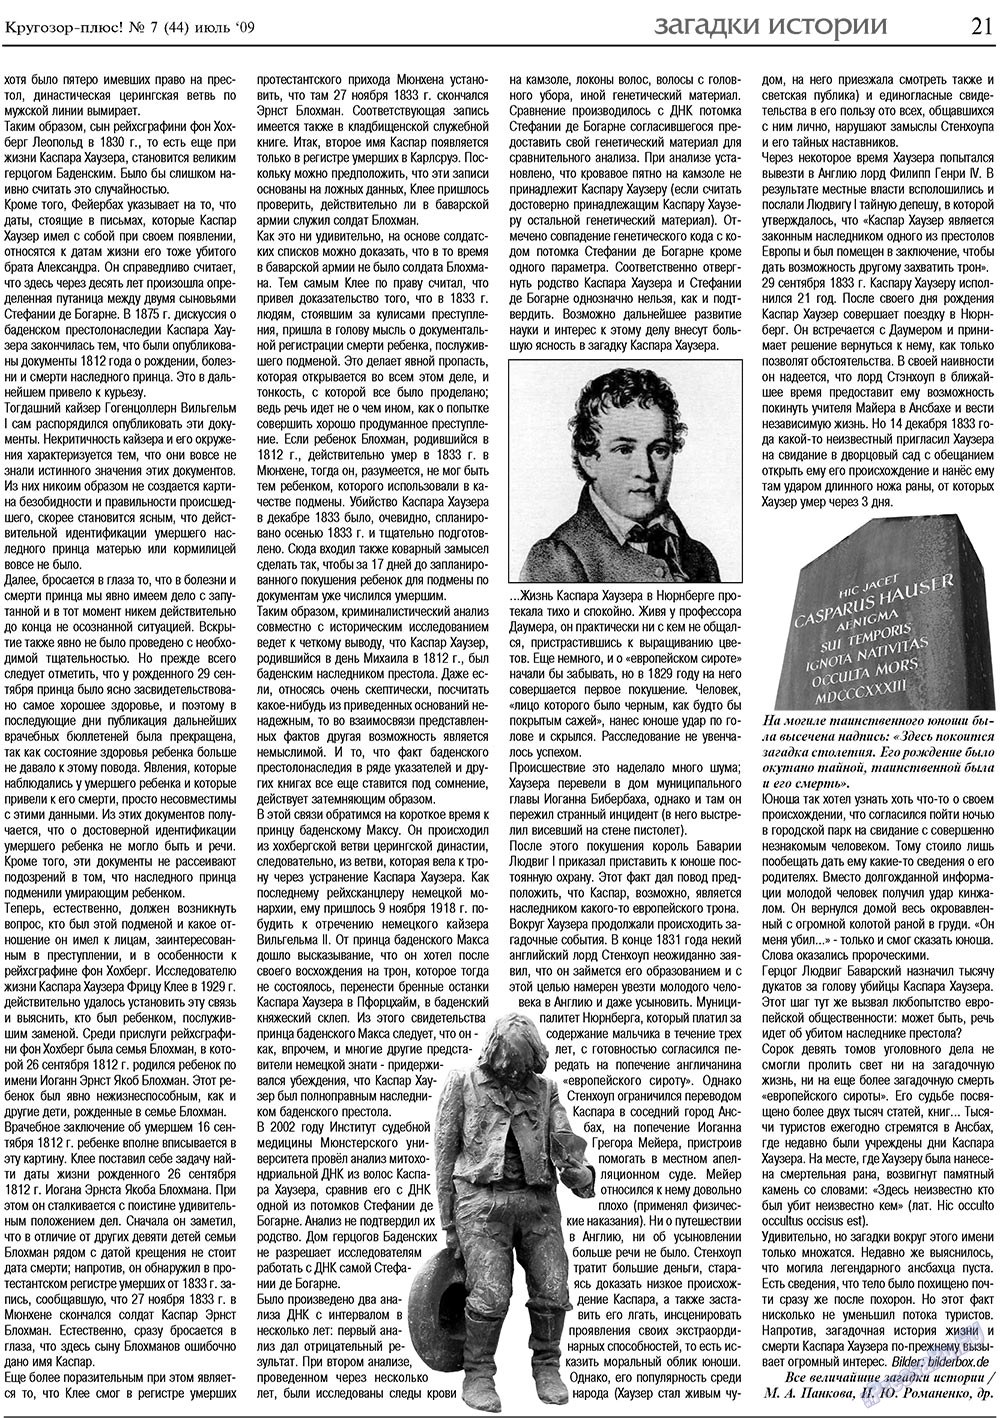 Кругозор плюс!, газета. 2009 №7 стр.21